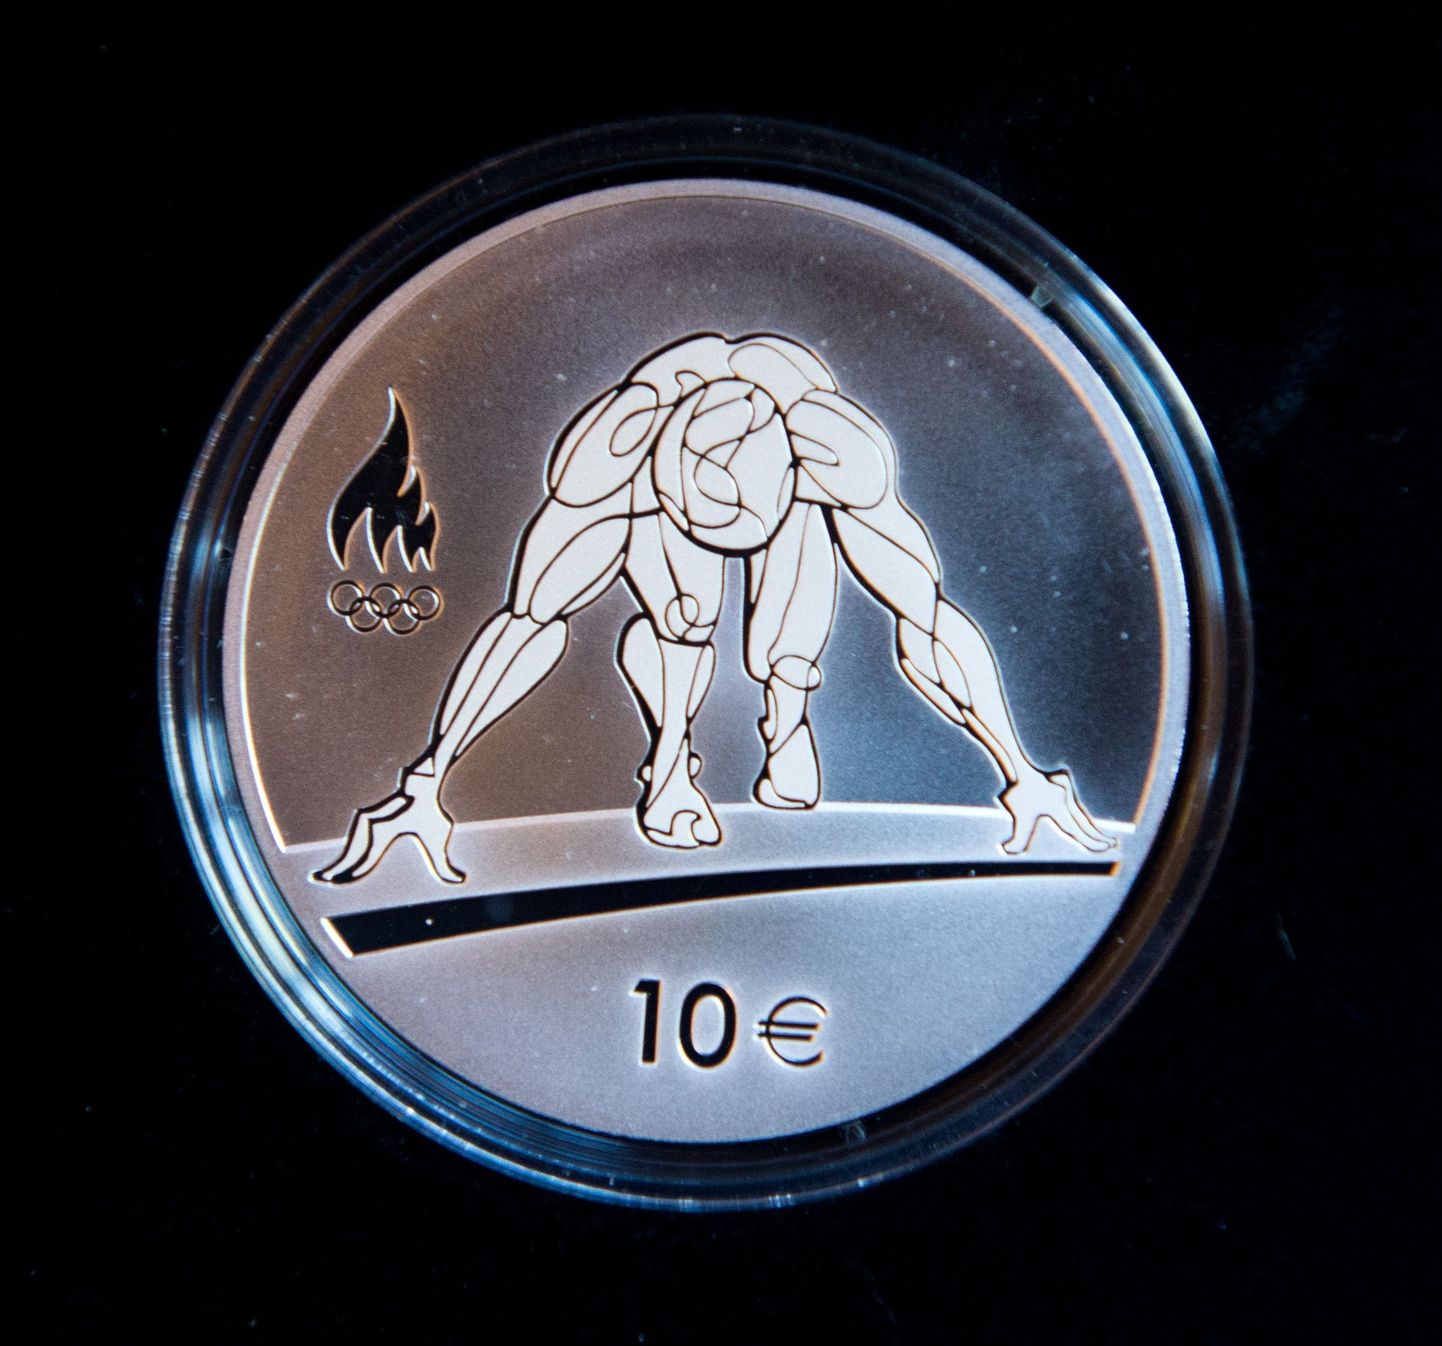 Сувенирная монета Эстонского банка в честь Олимпийских игр в Рио.